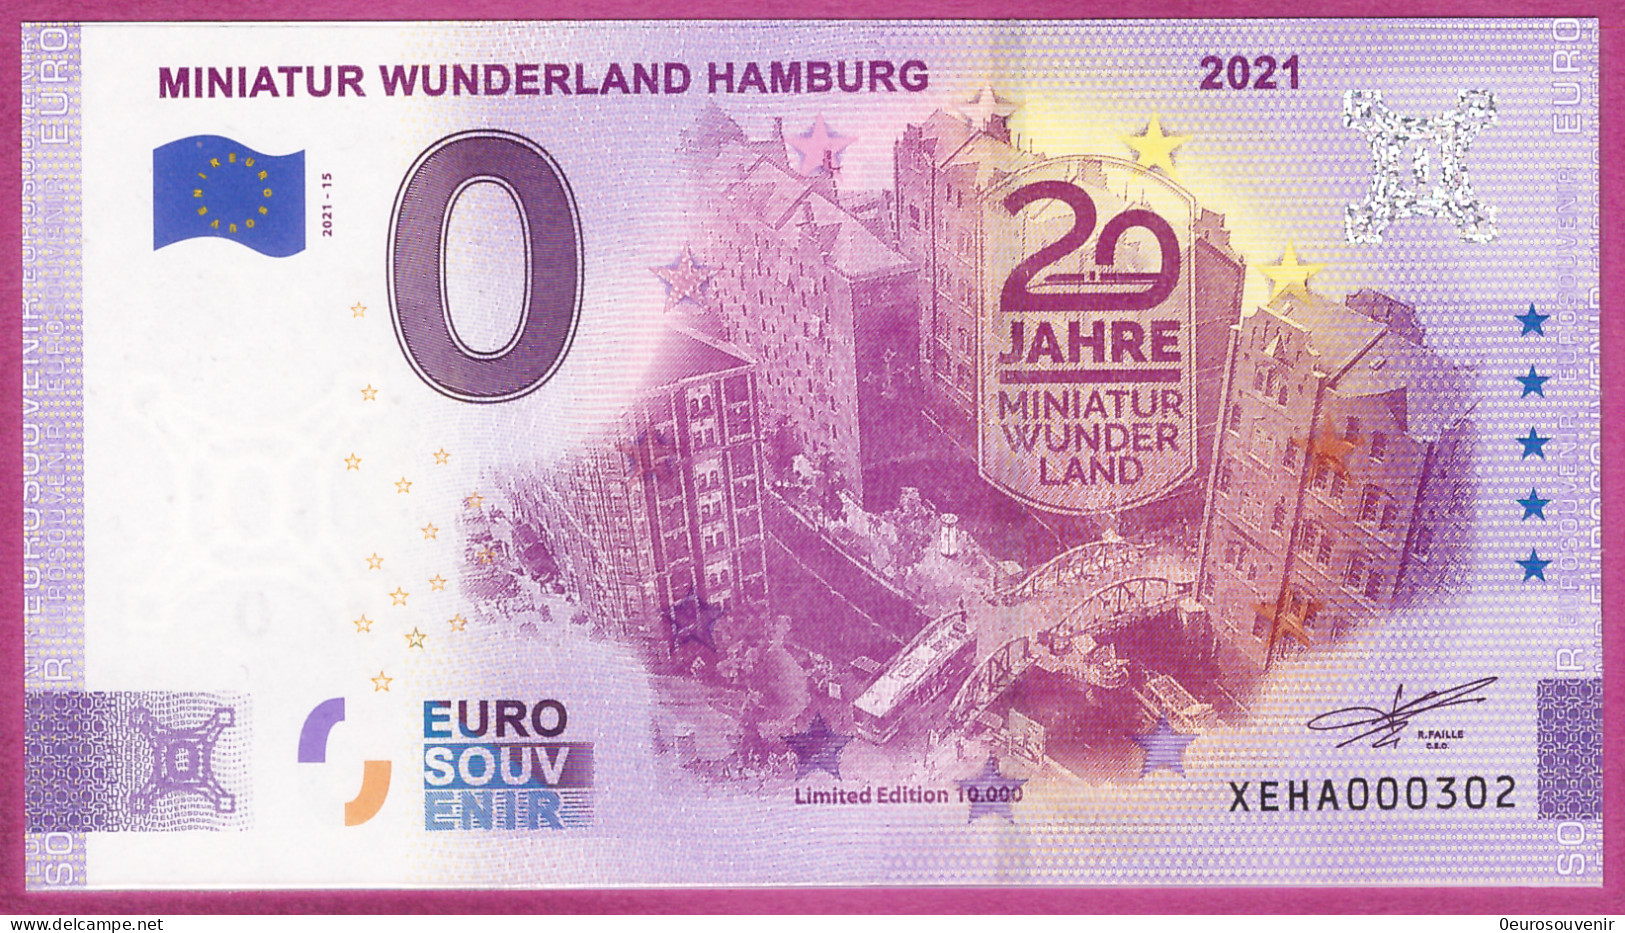 0-Euro XEHA 2021-15 MINIATUR WUNDERLAND HAMBURG - 20 JAHRE 2021 - Privatentwürfe